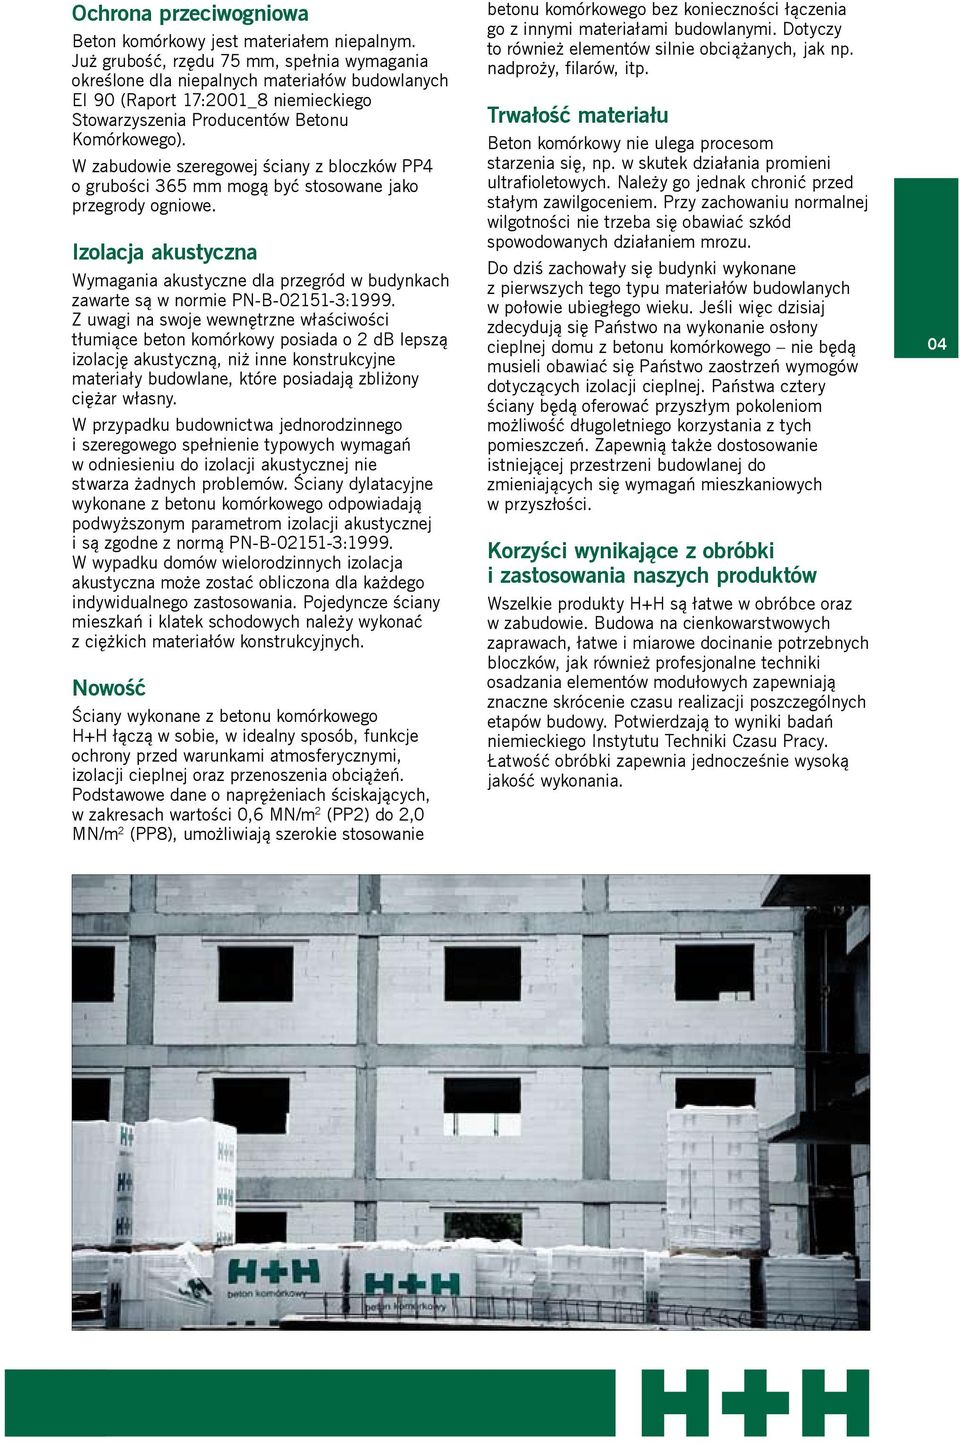 W zabudowie szeregowej ściany z bloczków PP4 o grubości 365 mm mogą być stosowane jako przegrody ogniowe.